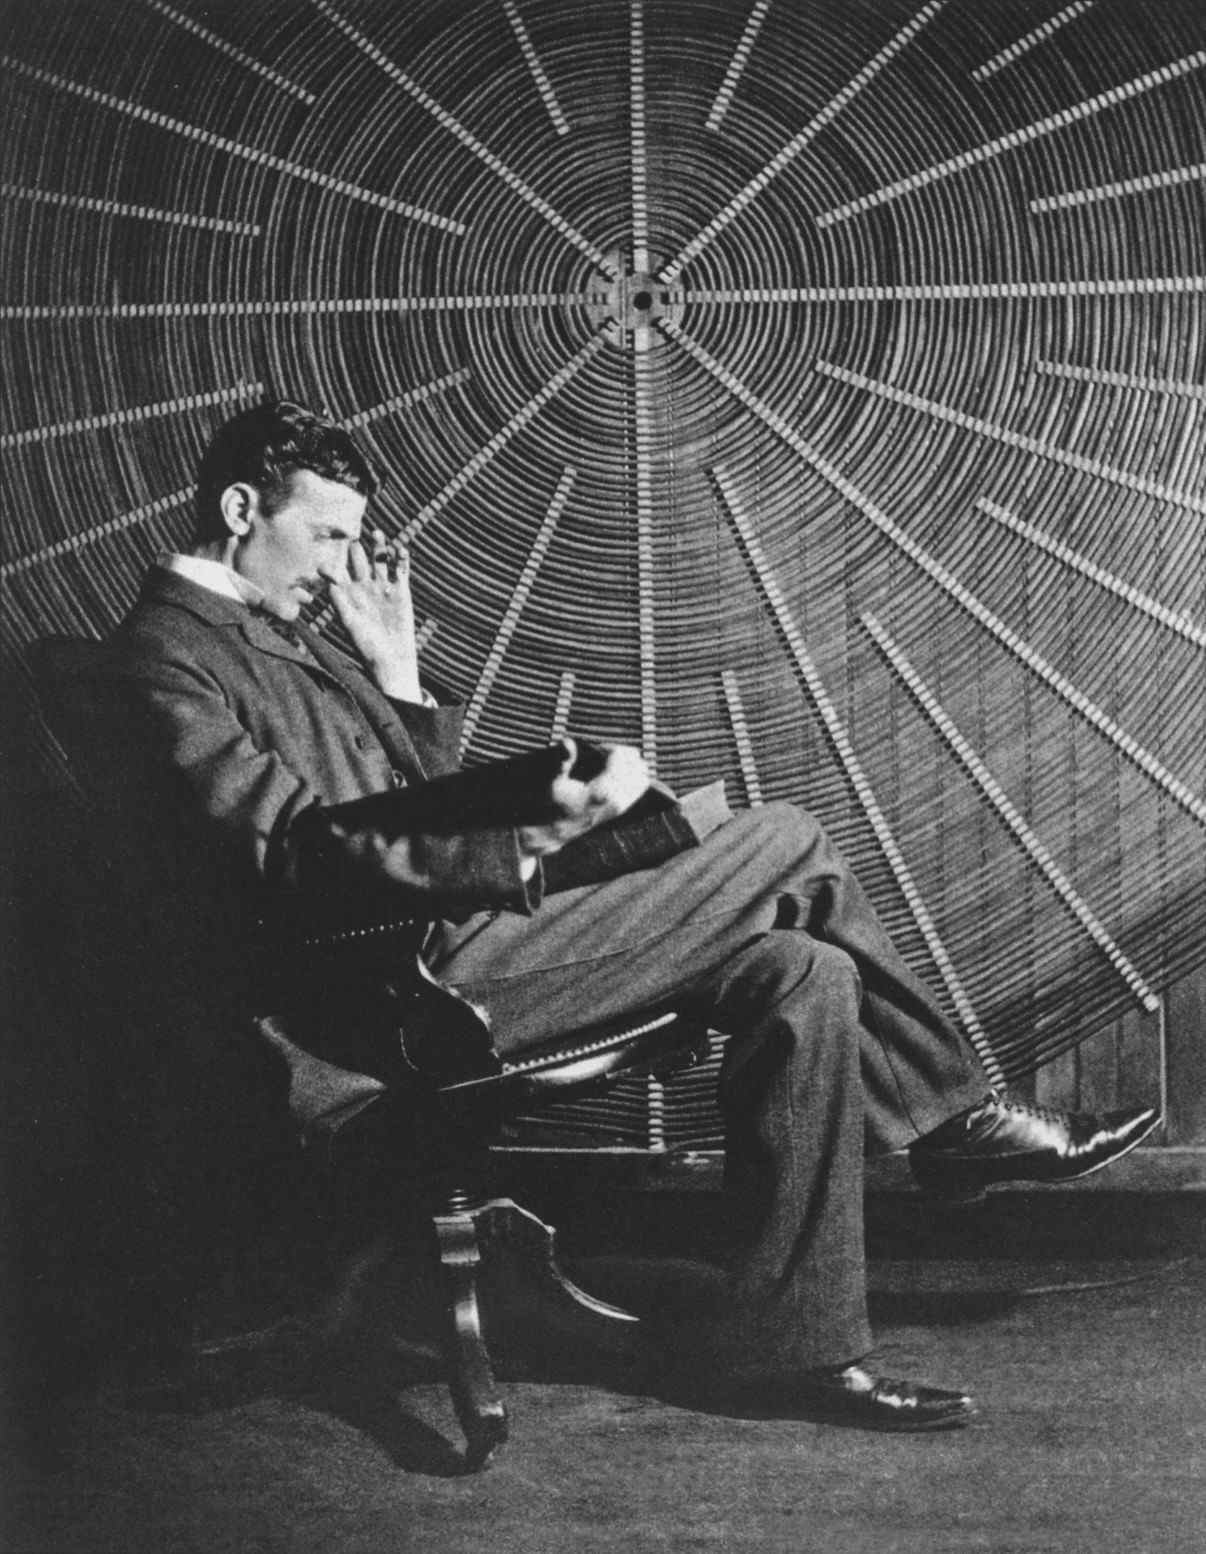 Tesla i ulur përballë një spiraleje të përdorur në eksperimentet e tij të energjisë me valë në laboratorin e tij në East Houston St.